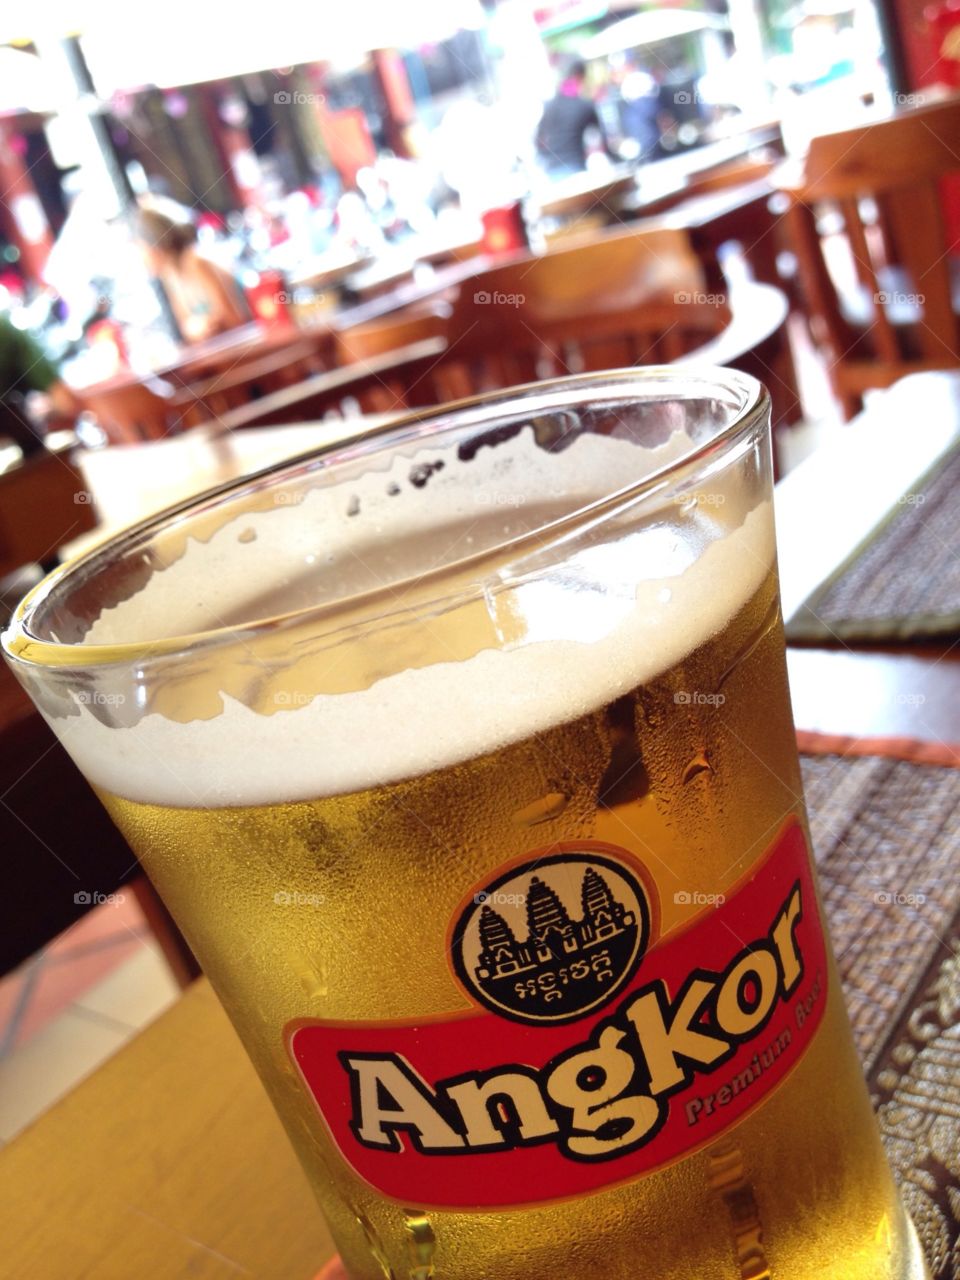 angkor beer, Cambodia